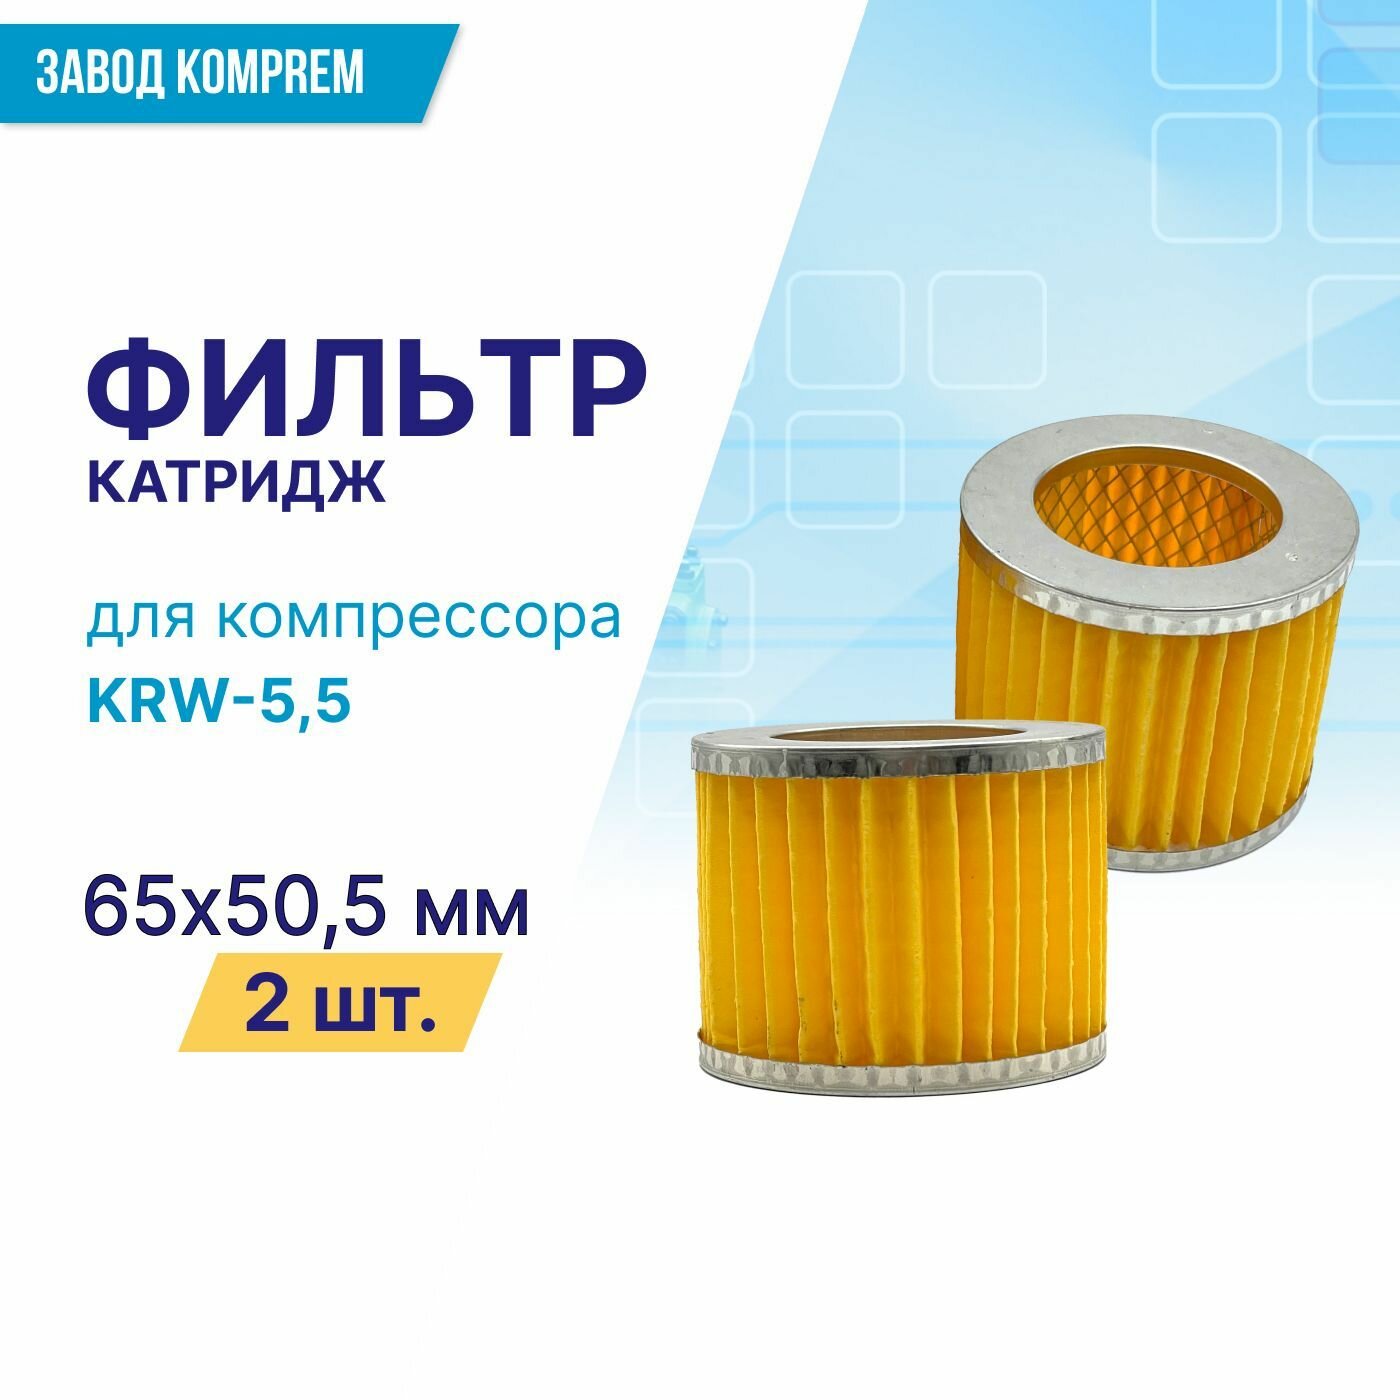 Фильтр (картридж) 65 мм х 50.5 мм для компрессора KRW-55 (комплект 2 шт.)